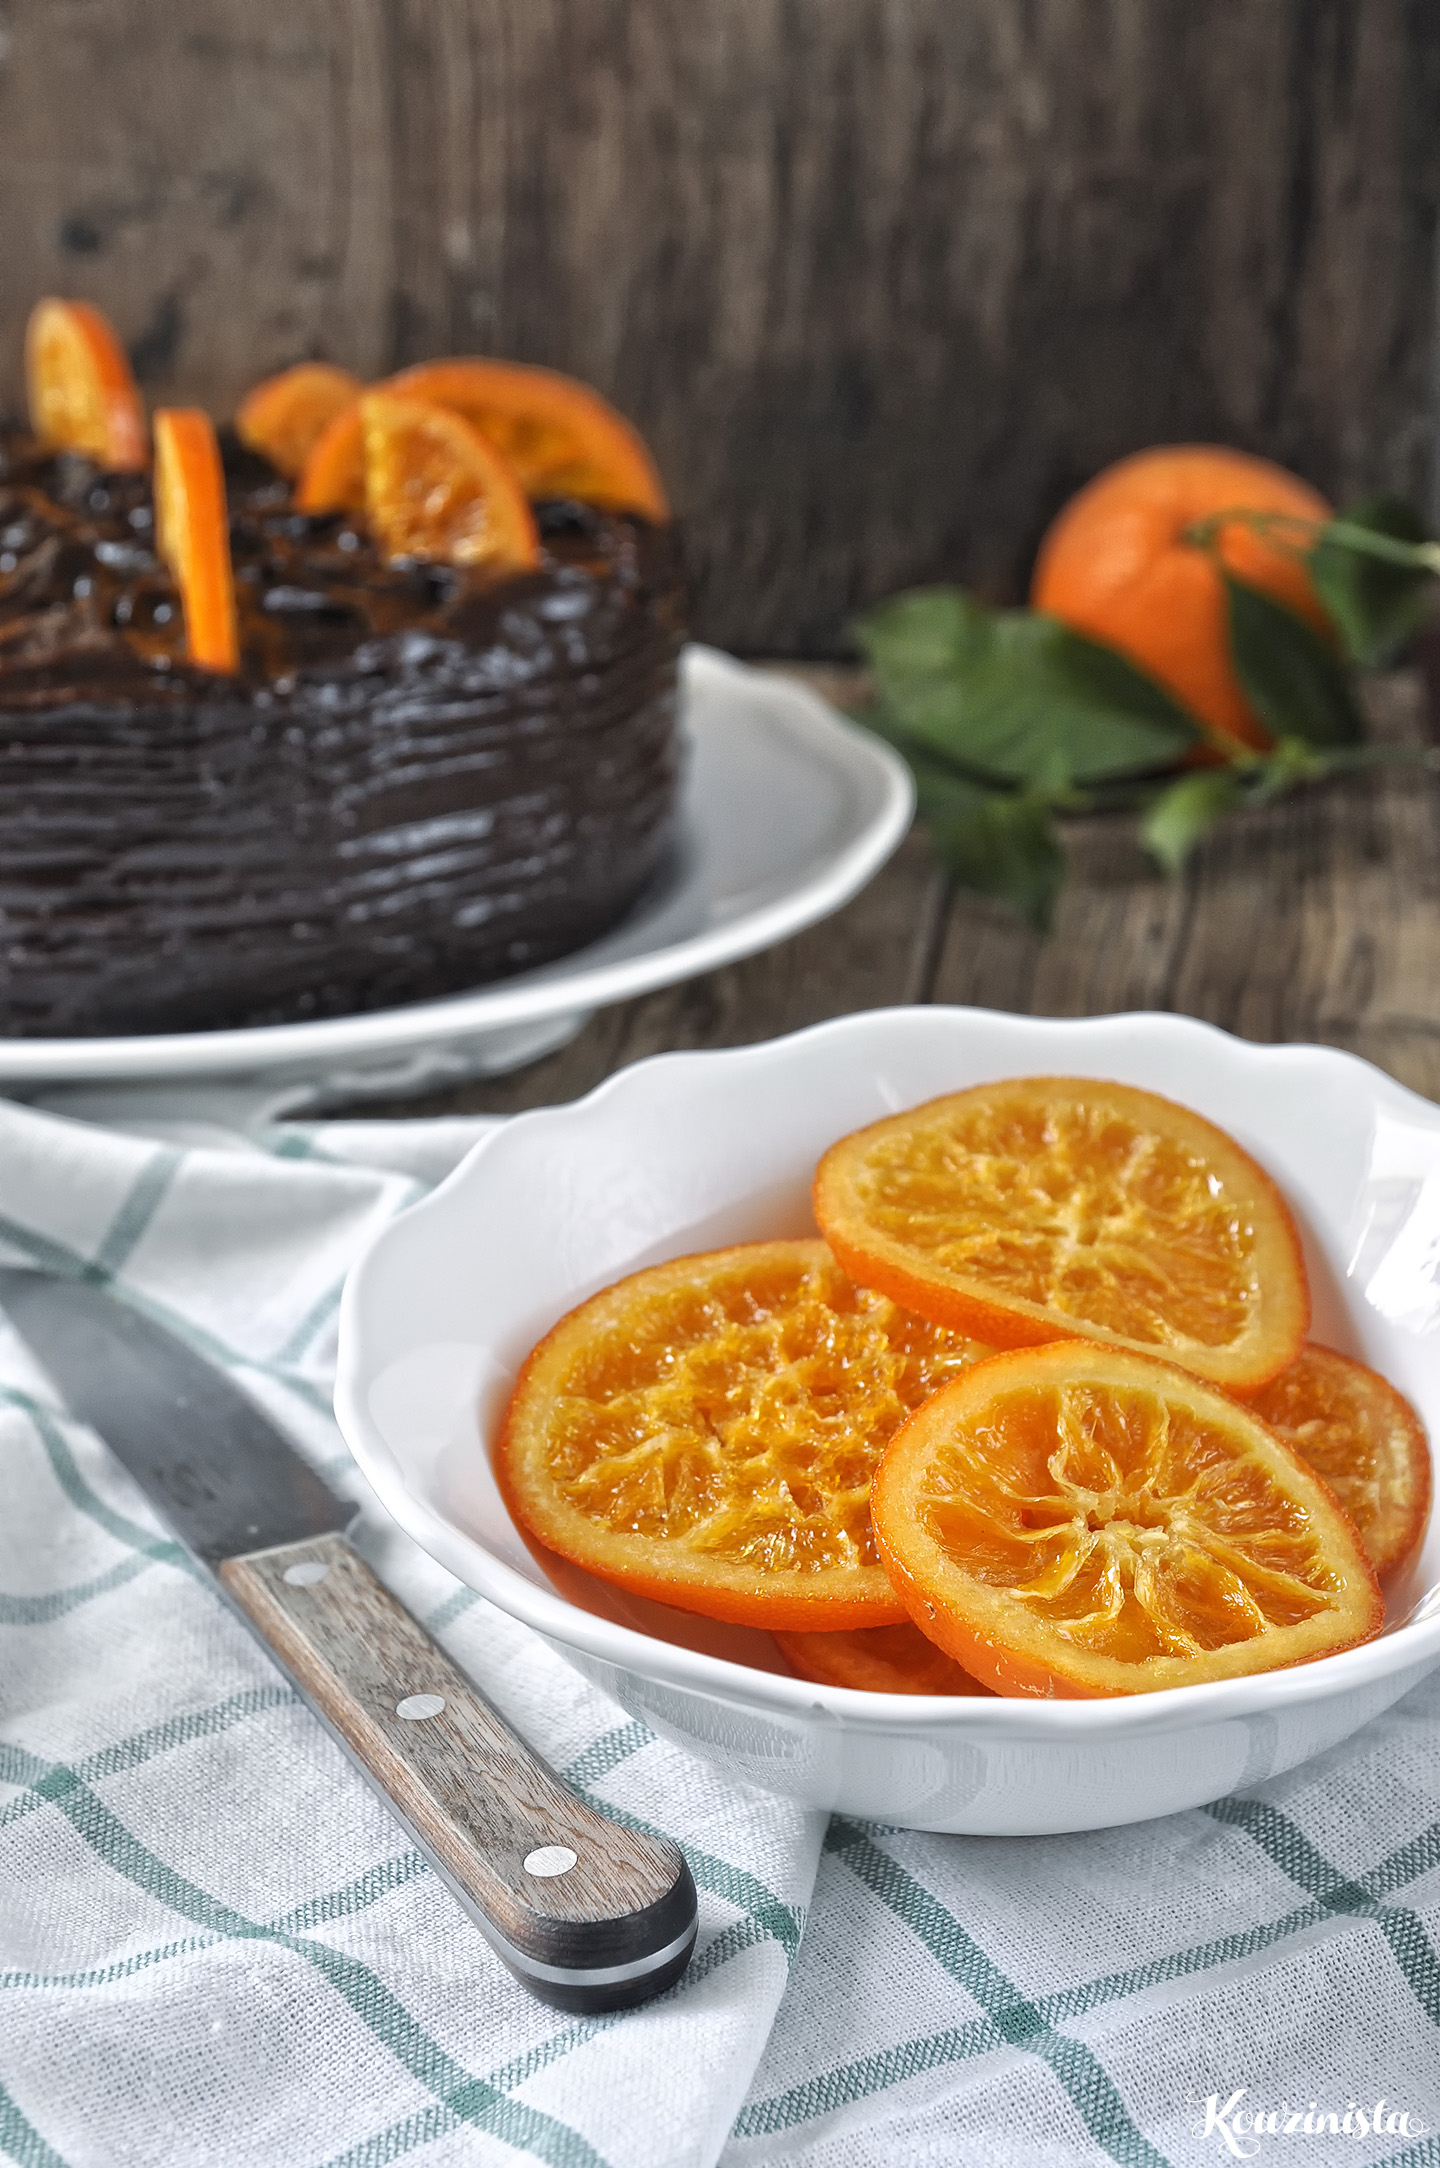 Νηστίσιμη τούρτα σοκολάτας με αβοκάντο & πορτοκάλι / Vegan chocolate-orange avocado cake